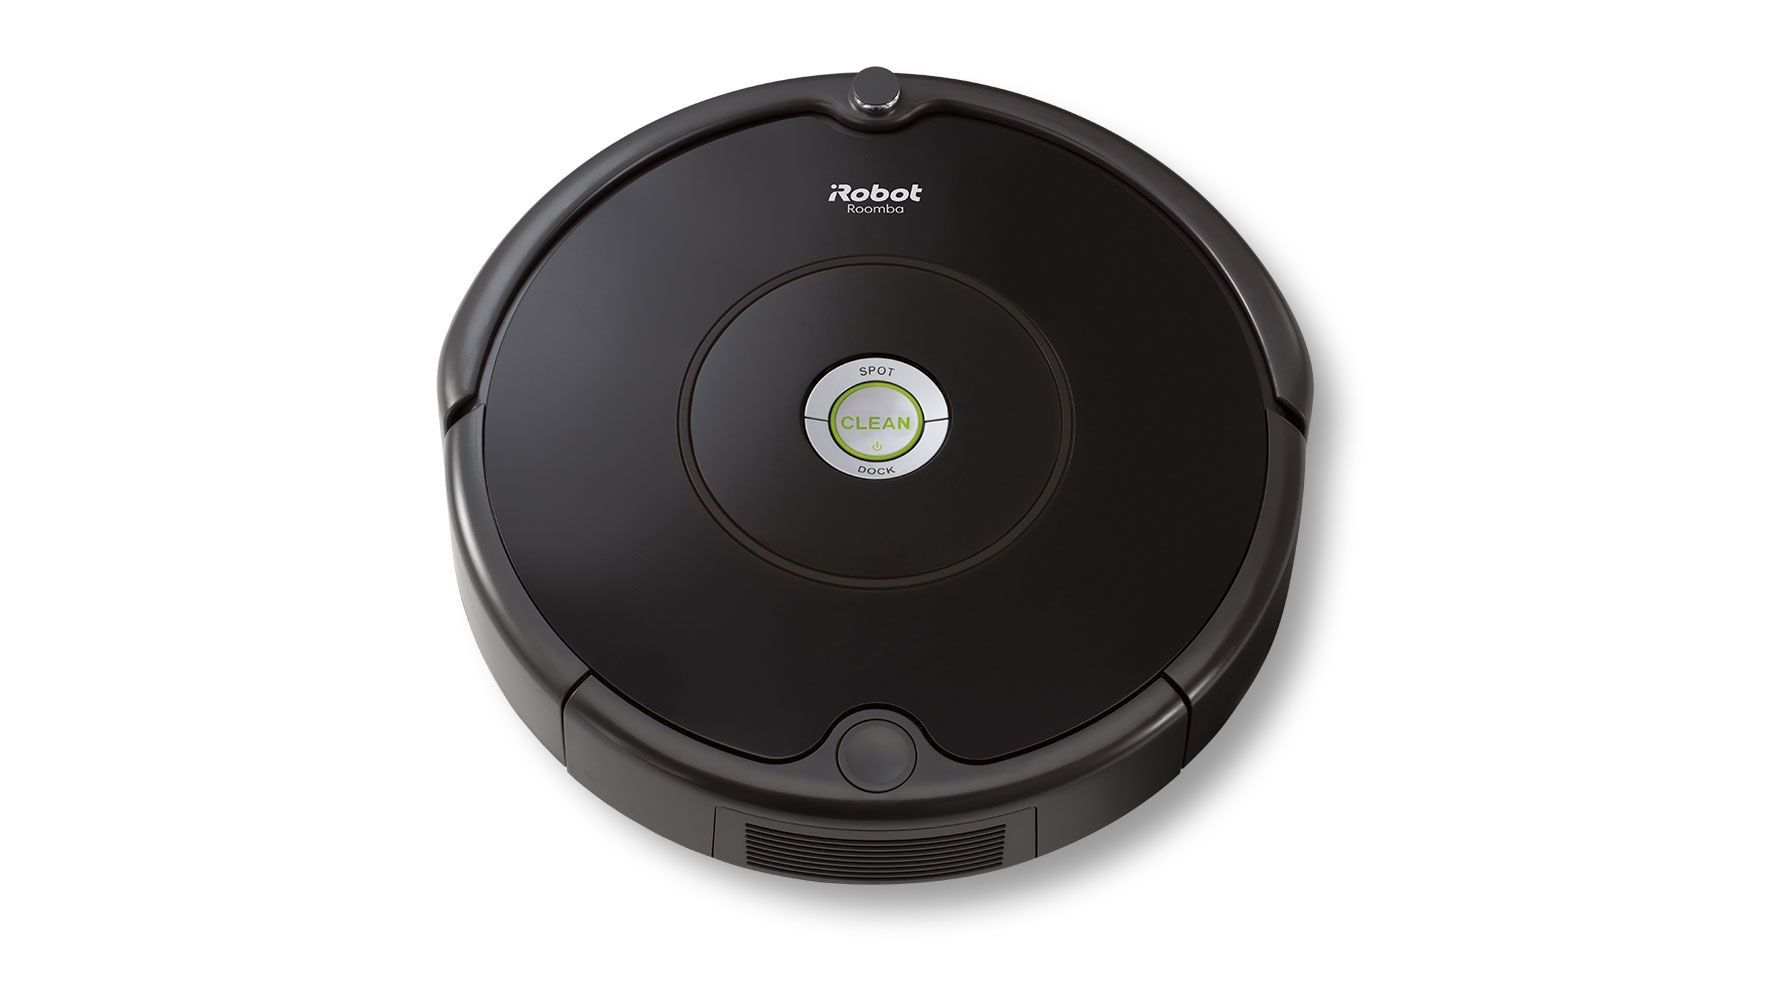 ¡Chollo Flash! Robot aspirador Roomba 606 por sólo 144,49€ con este cupón